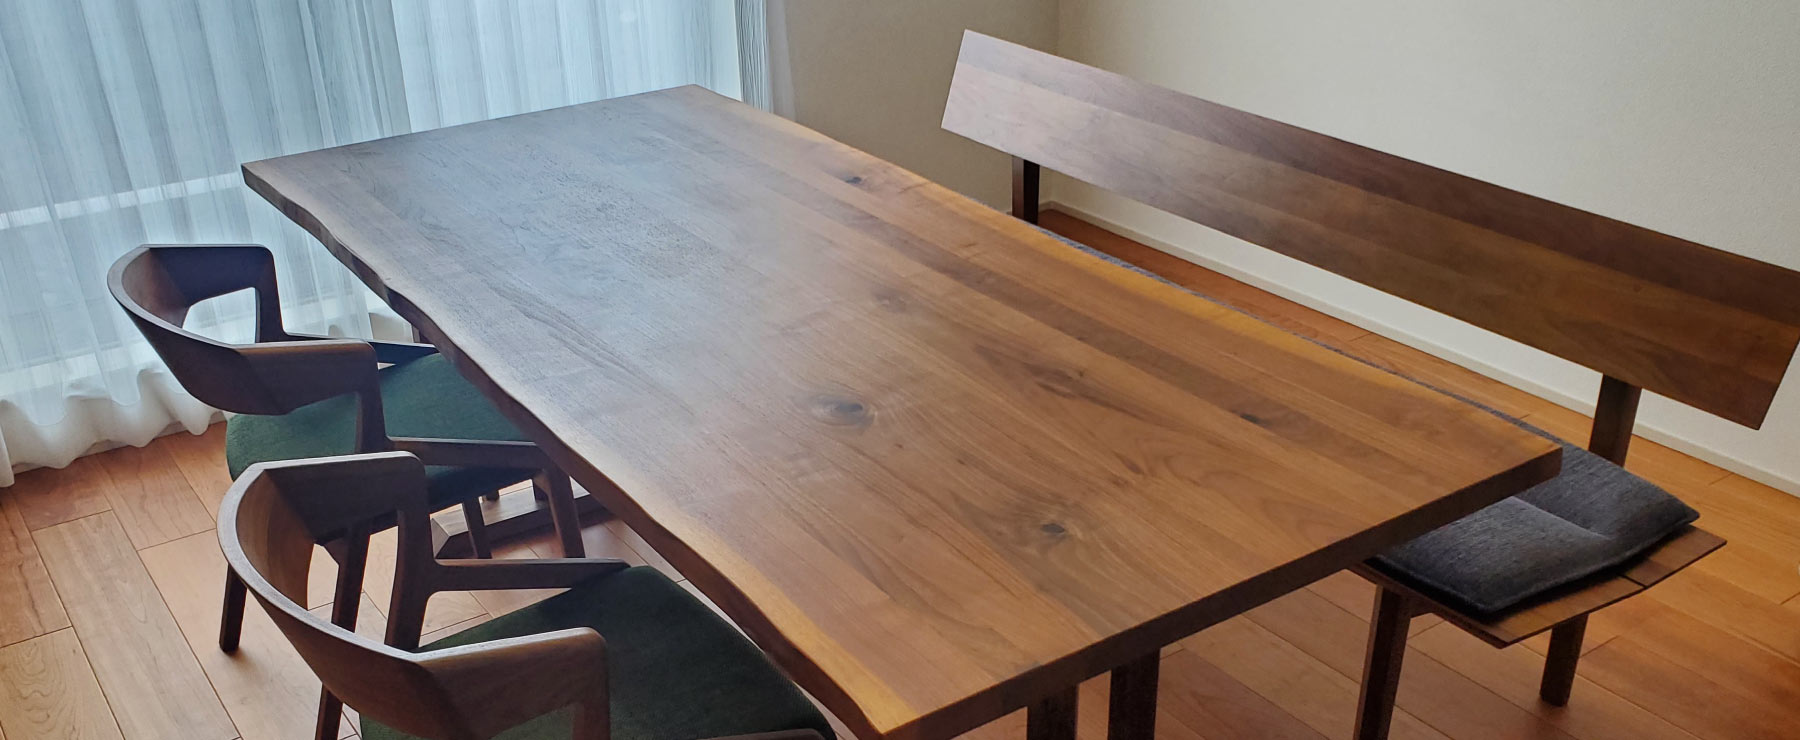 サイズオーダー可能なダイニングテーブル。ウォールナットで作られたテーブルは自然素材の無垢材を使用しており、経年変化をお楽しみいただけます。